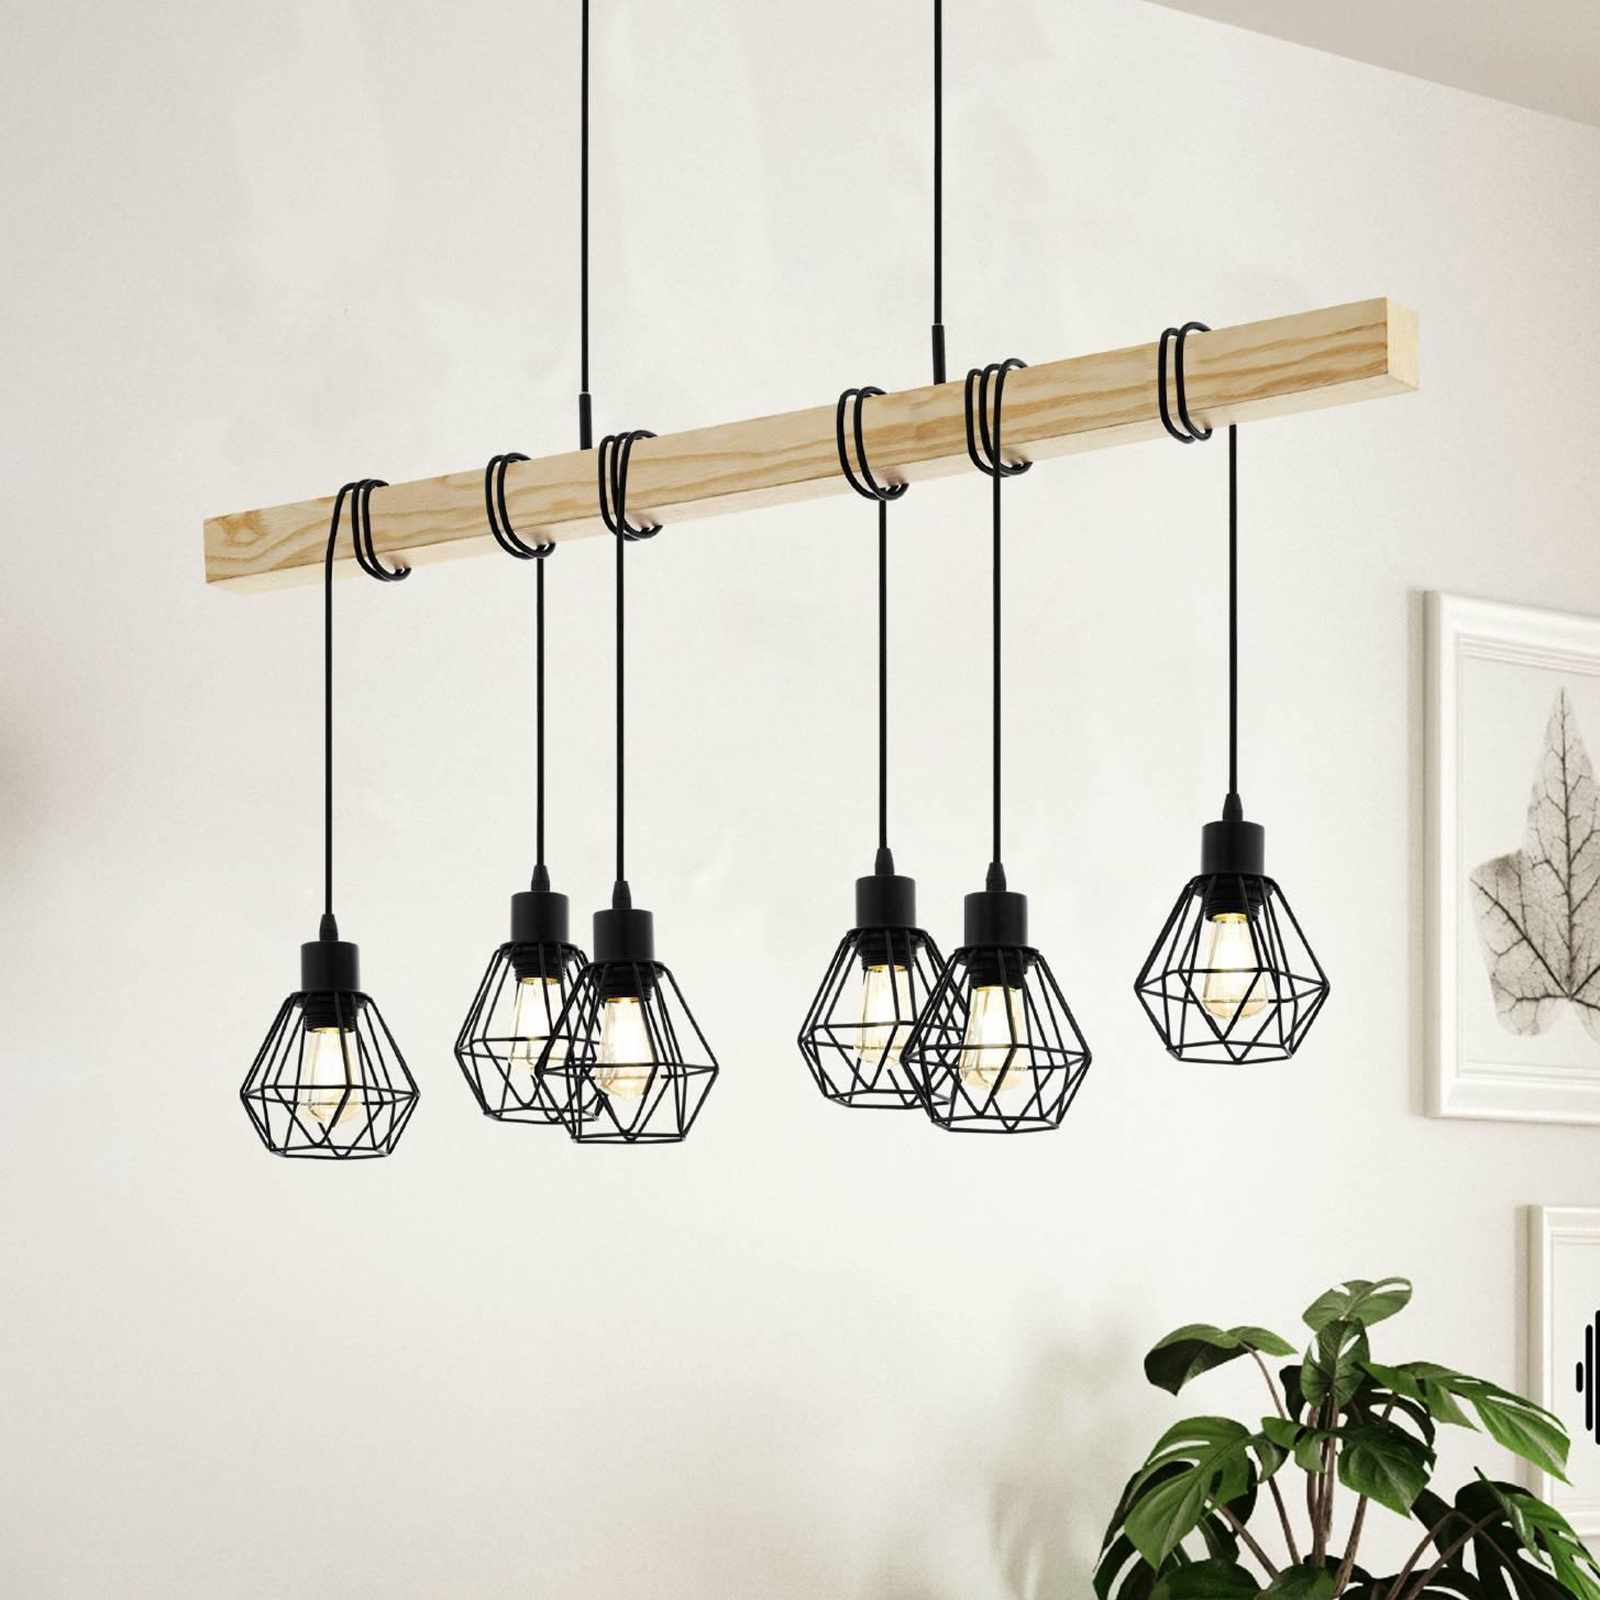 Townshend hanglamp, lengte 100 cm, zwart/eiken, 6-lamps.